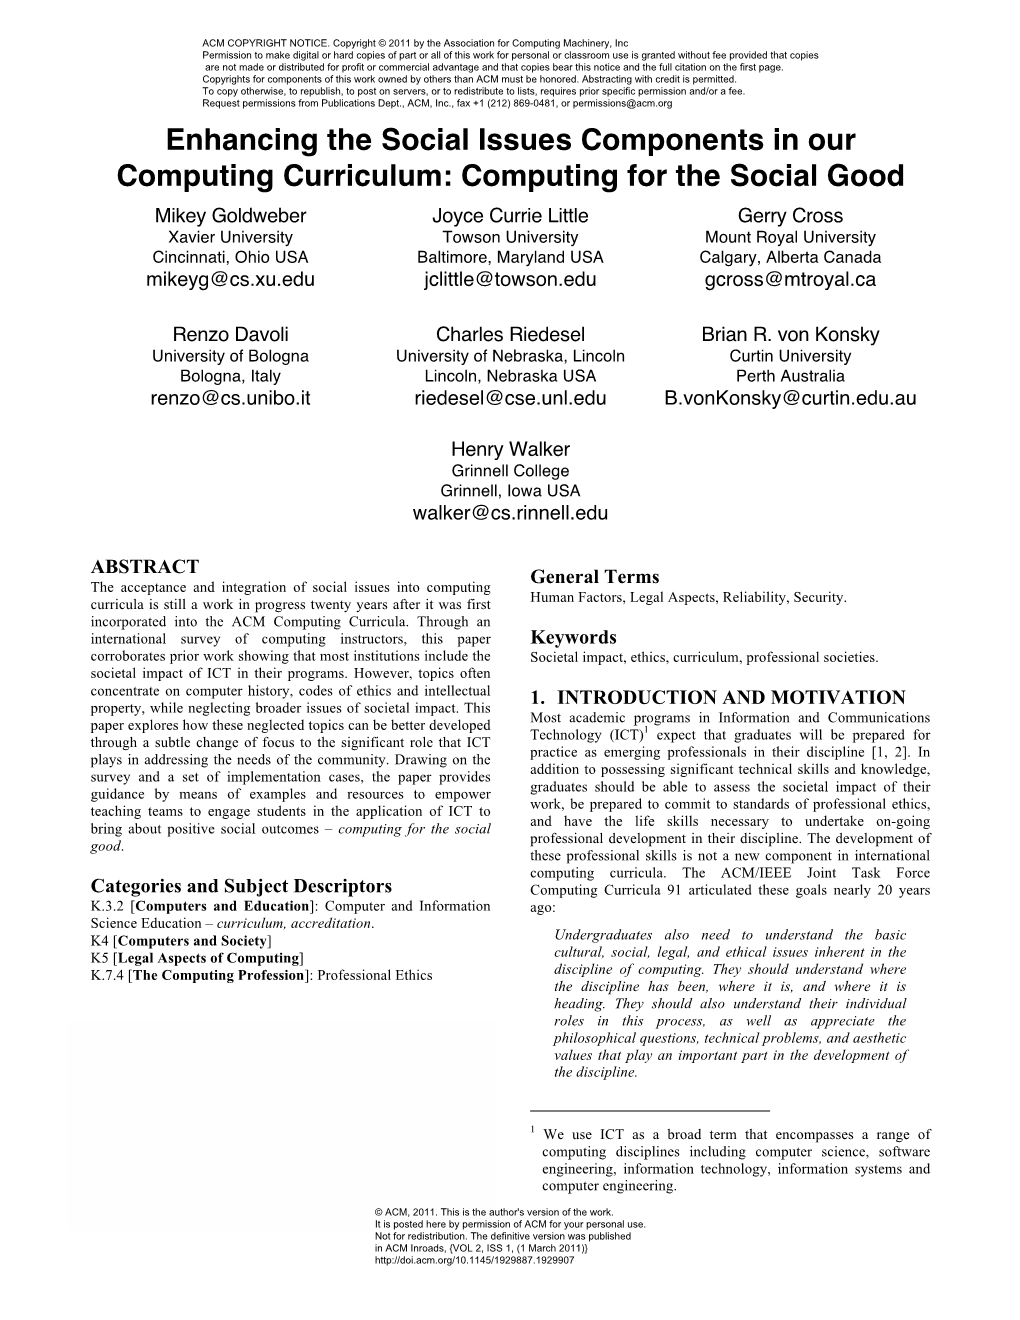 Computing for the Social Good